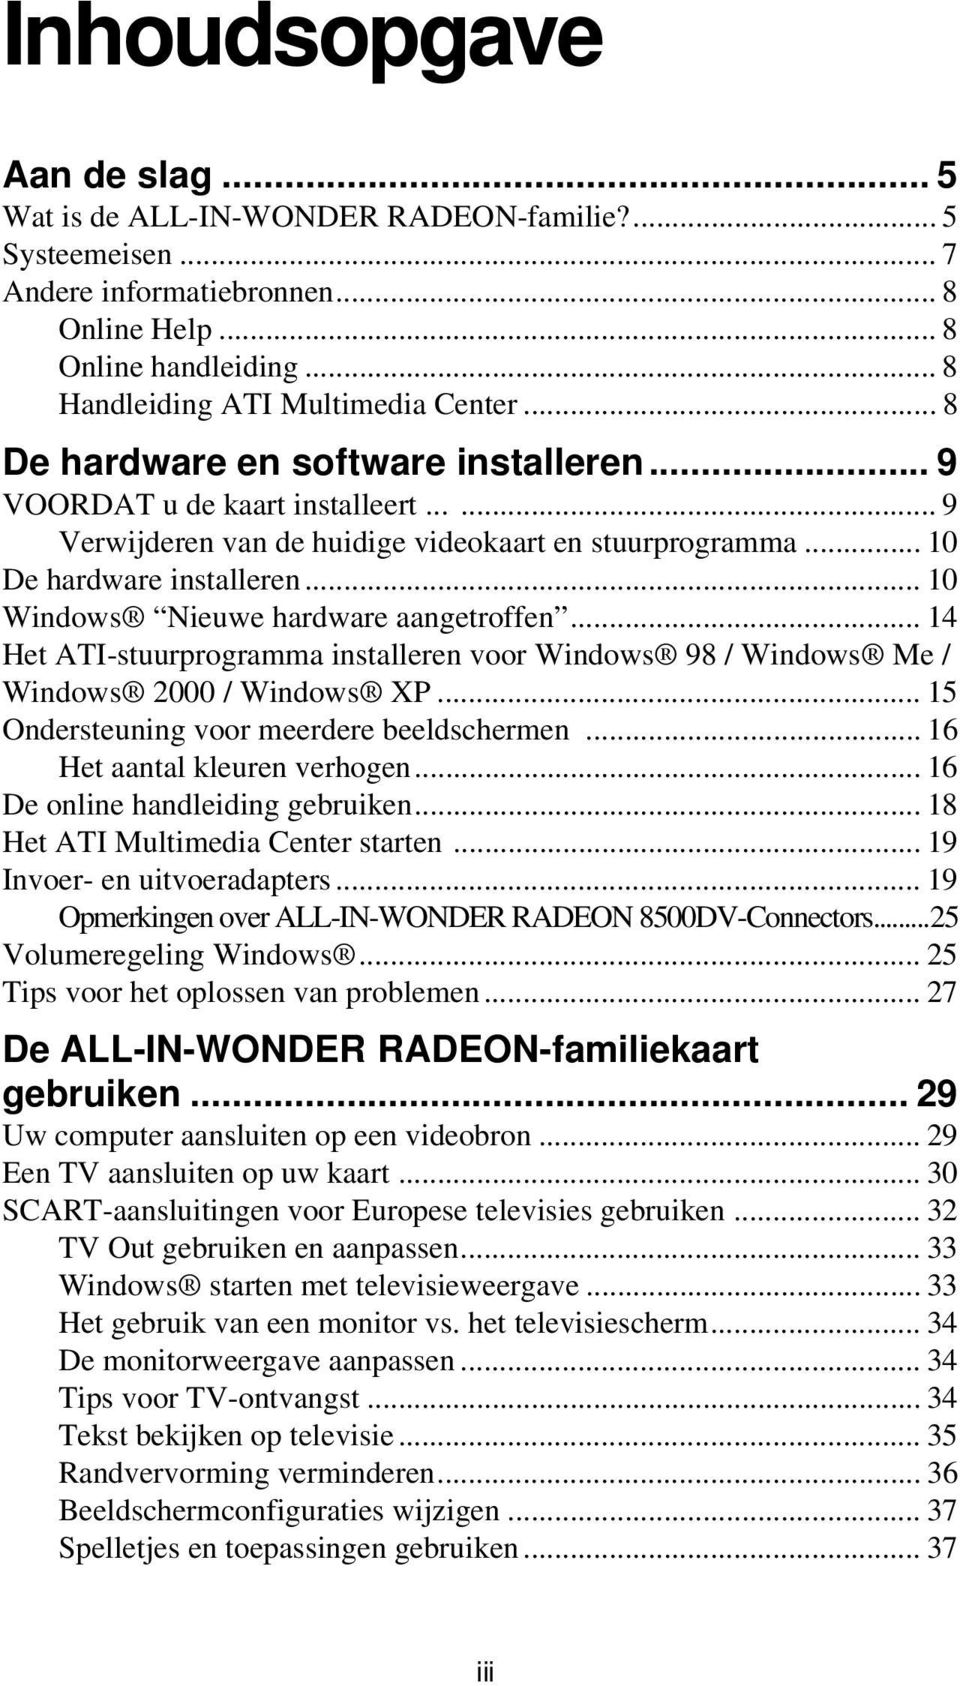 .. 10 Windows Nieuwe hardware aangetroffen... 14 Het ATI-stuurprogramma installeren voor Windows 98 / Windows Me / Windows 2000 / Windows XP... 15 Ondersteuning voor meerdere beeldschermen.